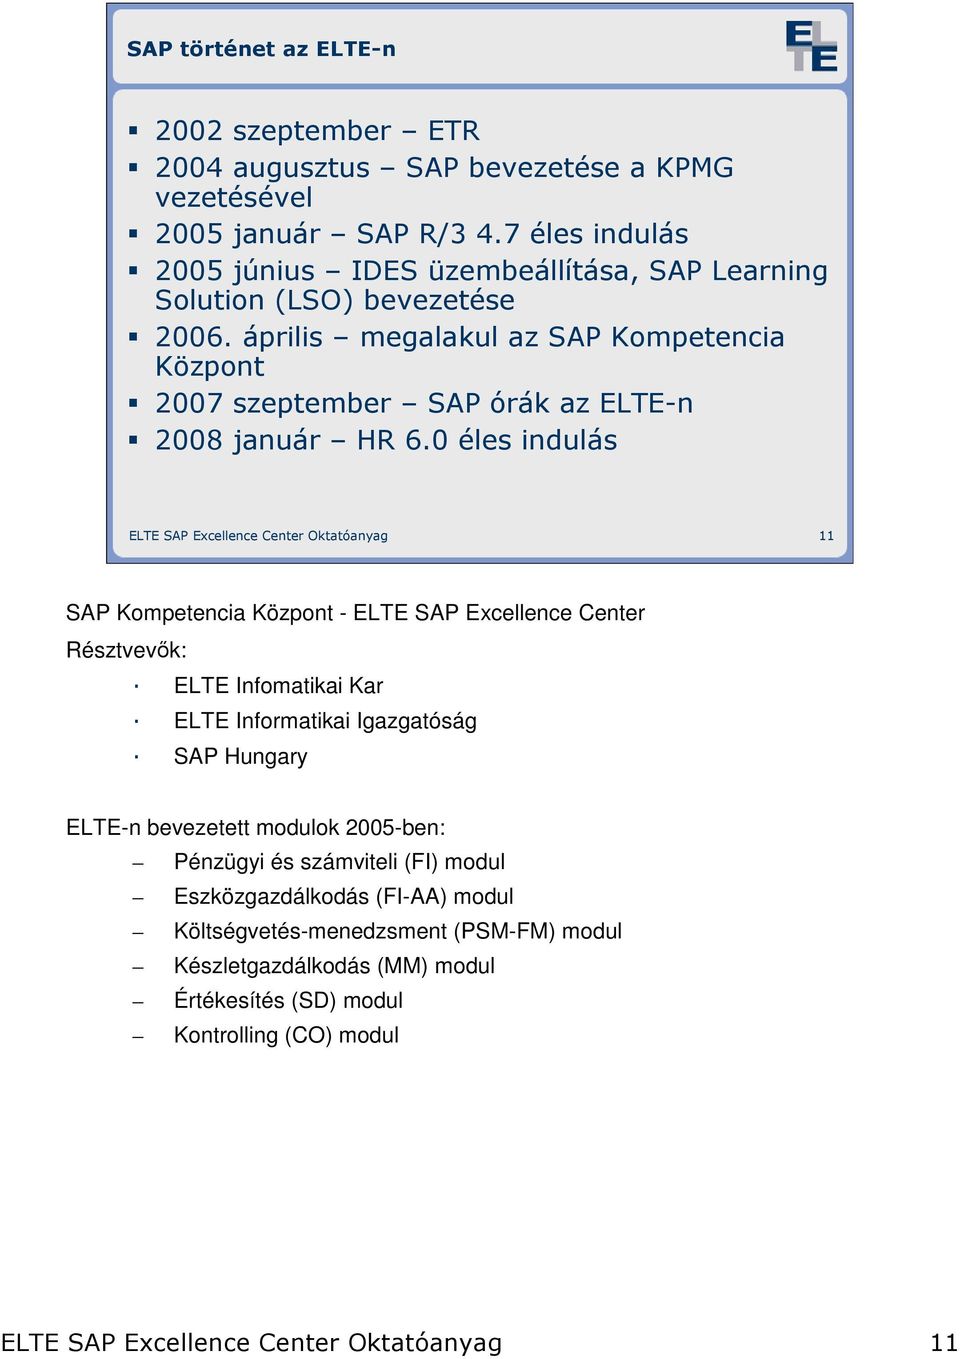 Bevezetés az SAP világába. 0. Bevezetı elıadás - PDF Ingyenes letöltés